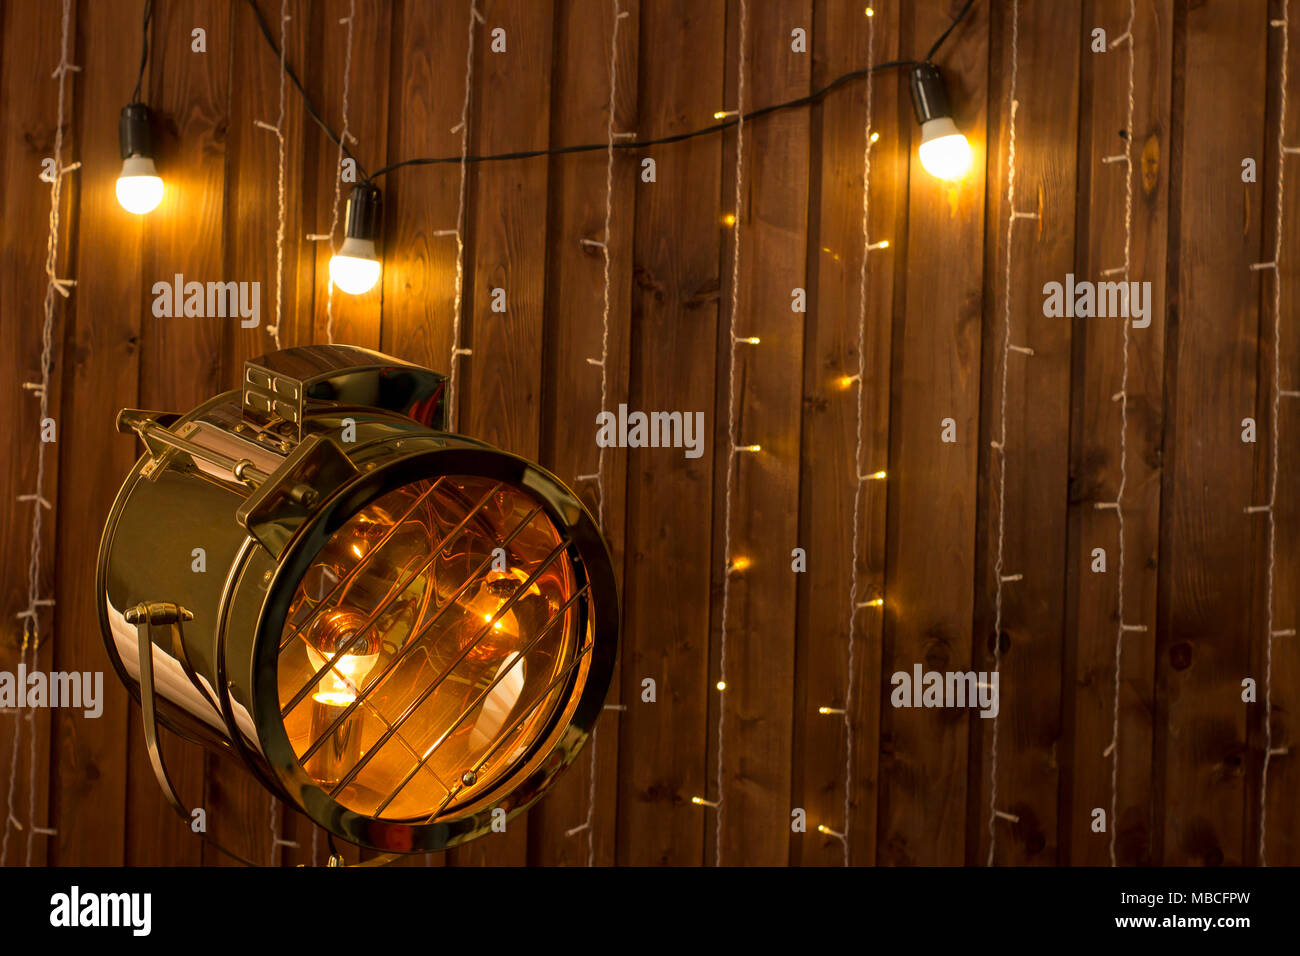 Loft innen orange Holzwand und vintage Licht Scheinwerfer Lampe retro  Hintergrund Mock up Stockfotografie - Alamy